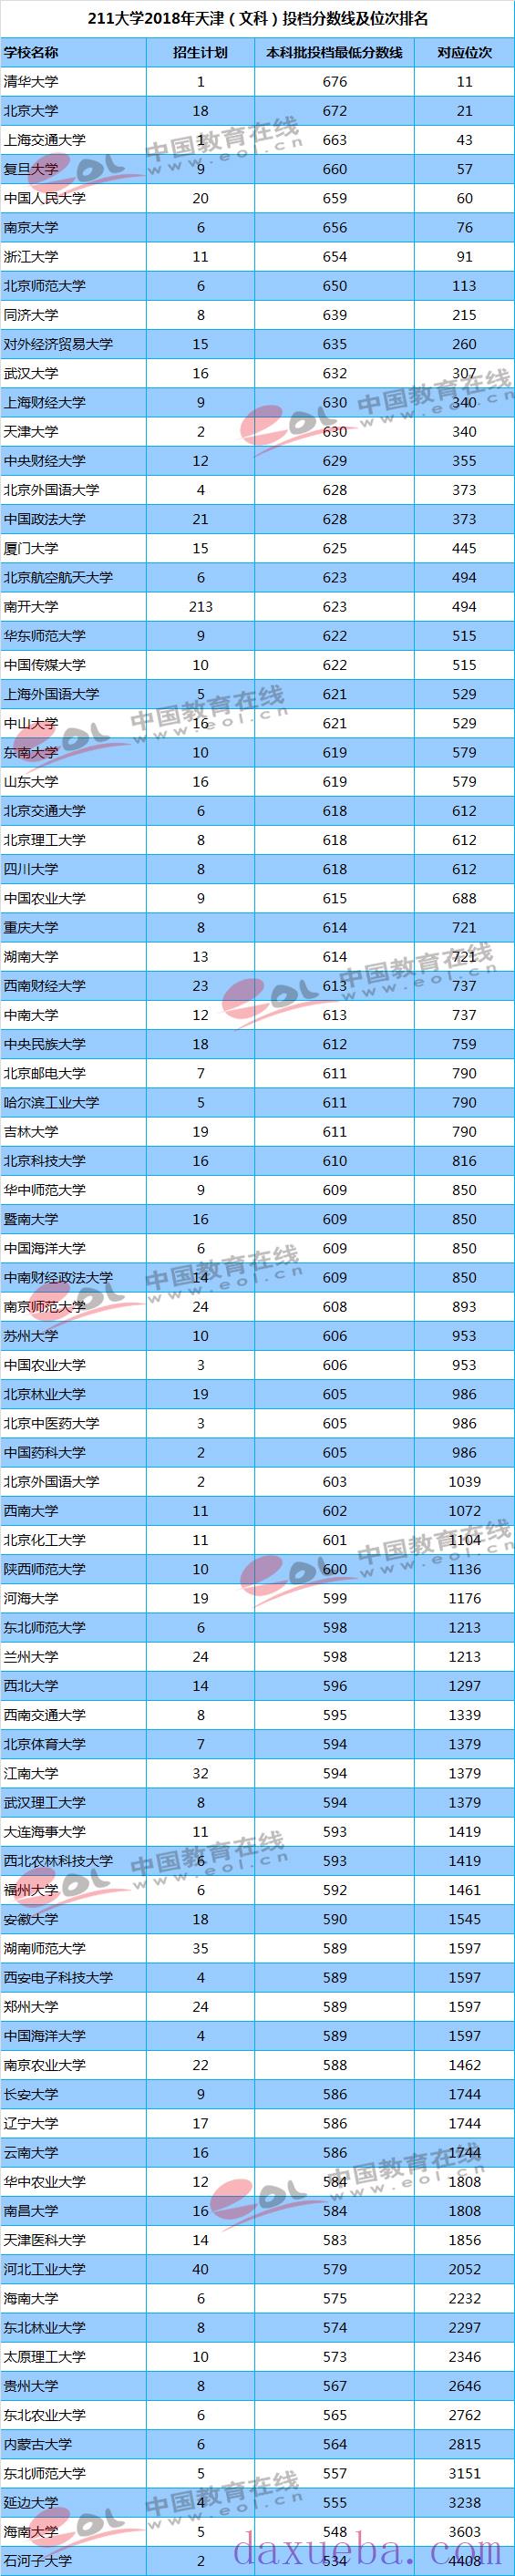 2018-2021年天津高考211大学投档线及最低录取位次统计表  